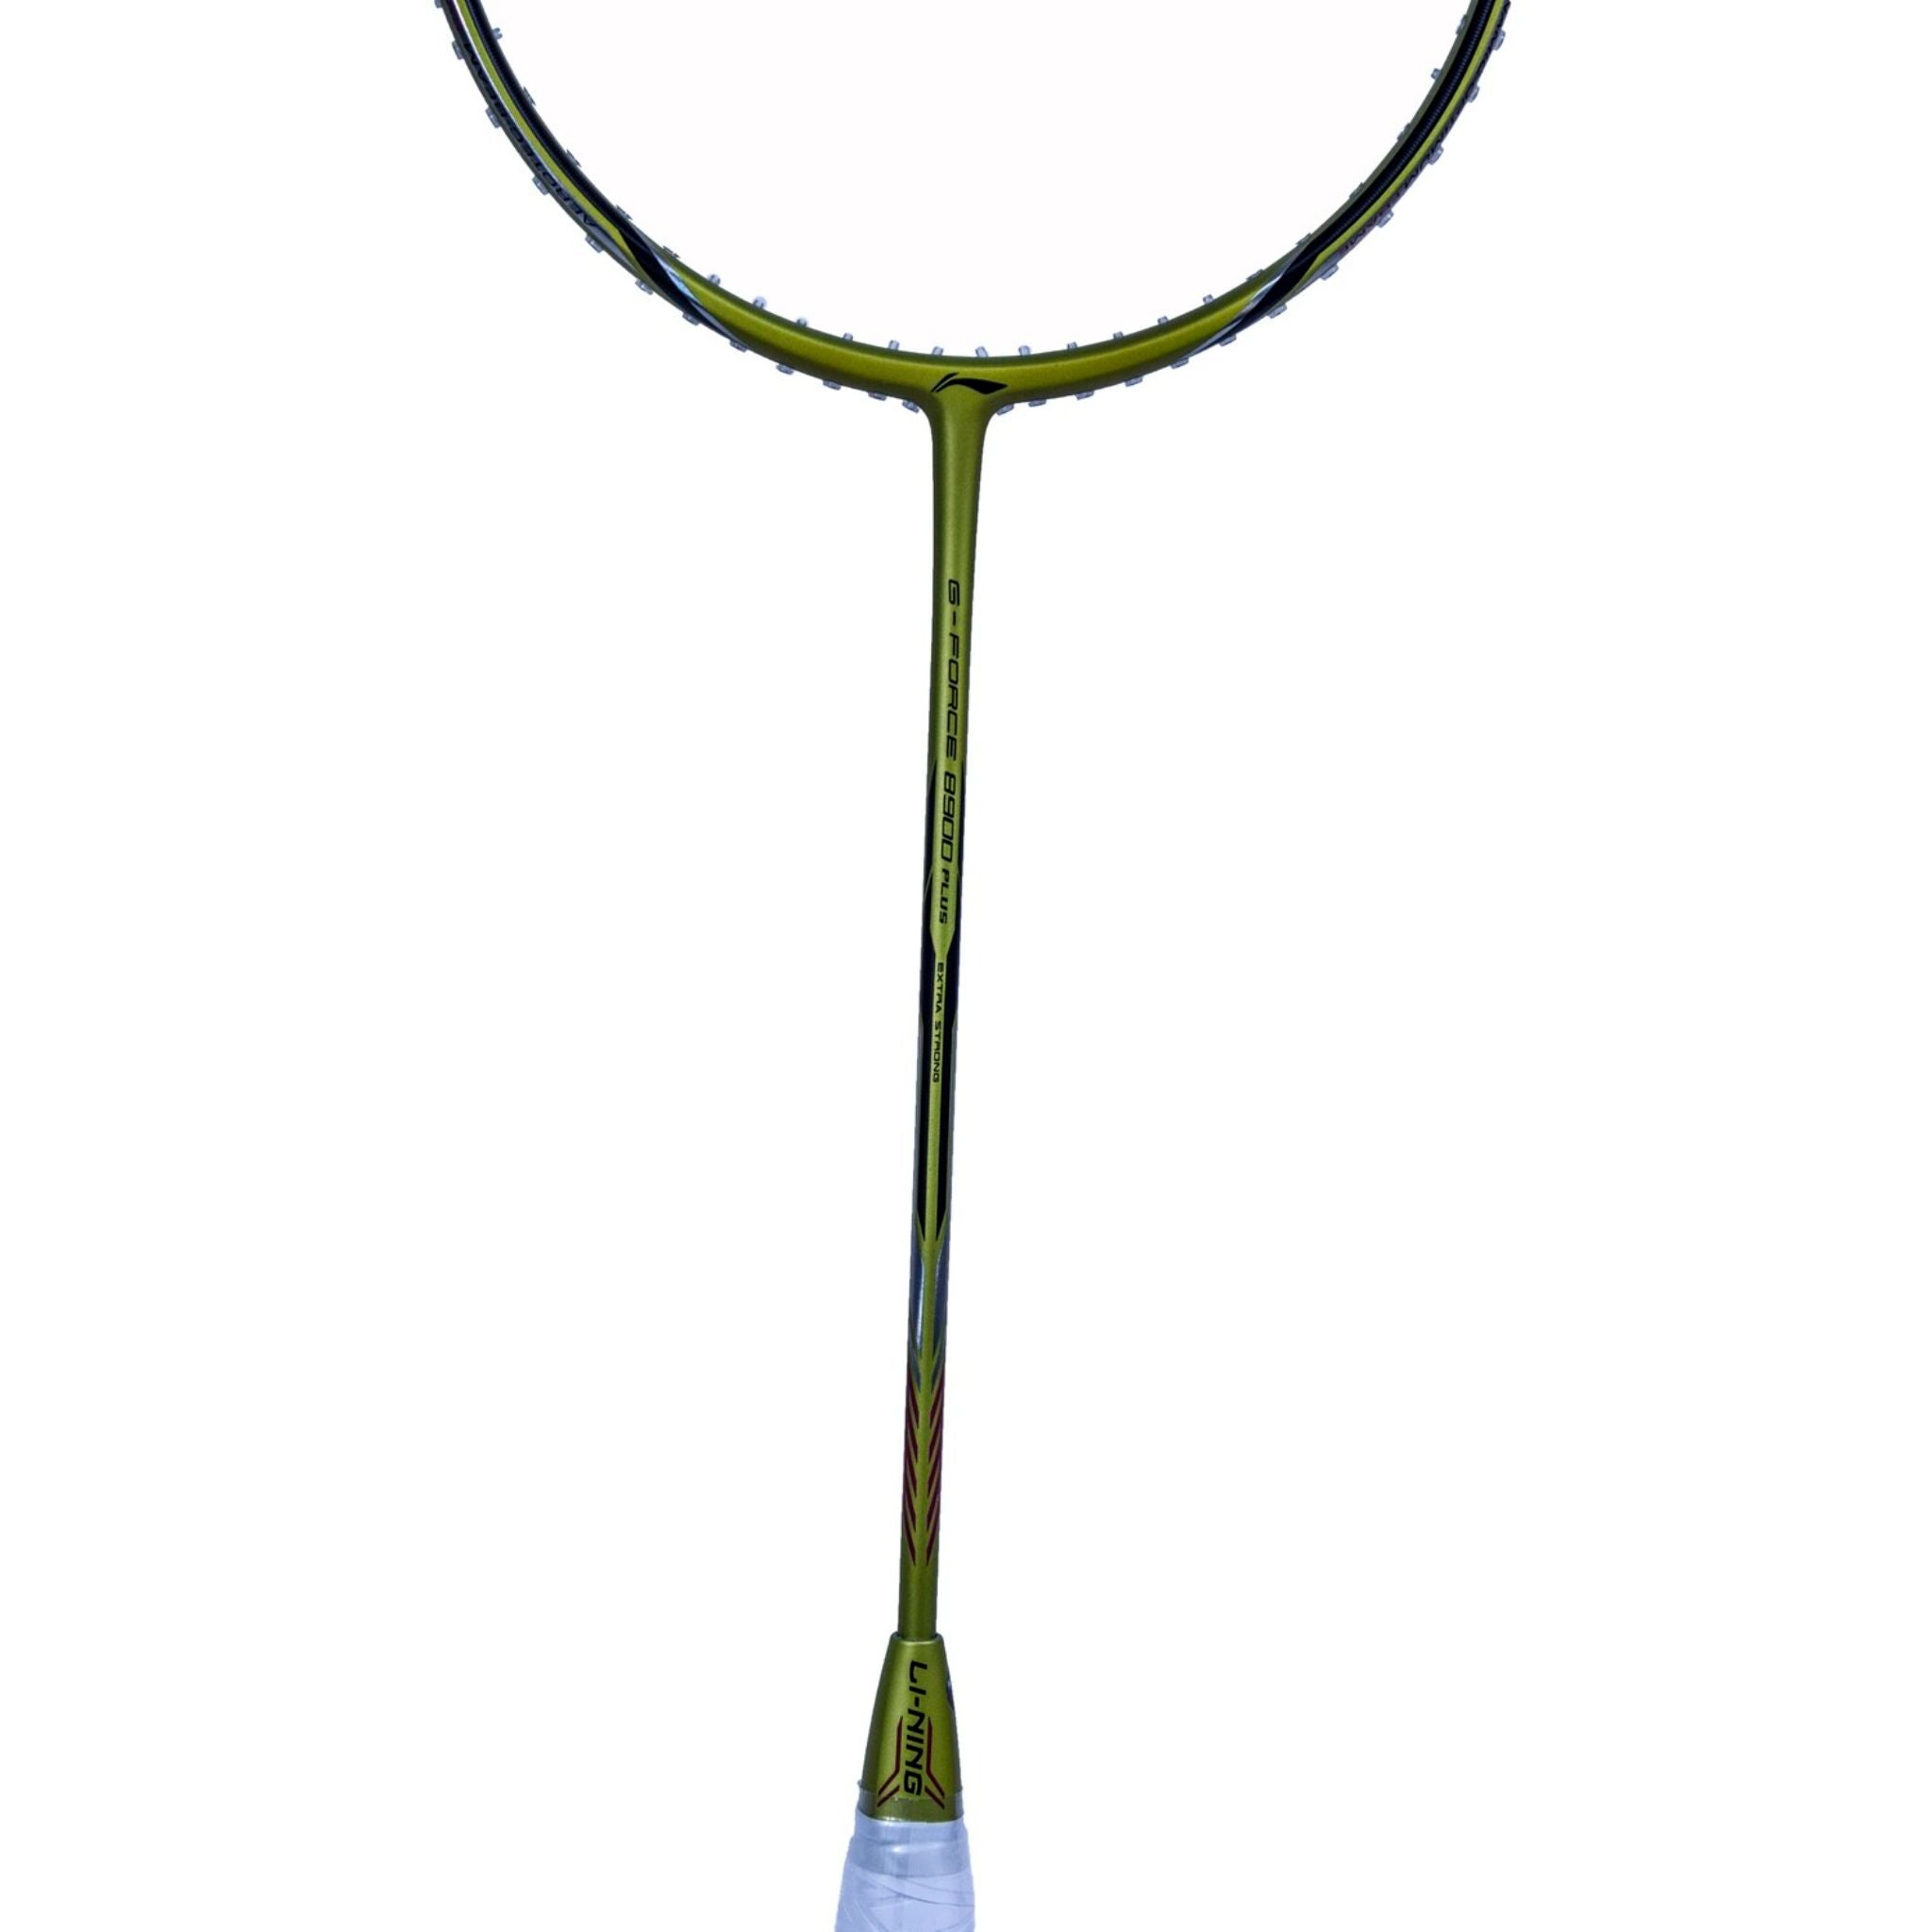 LI-NING G-Force 8900 Plus Badminton Racket